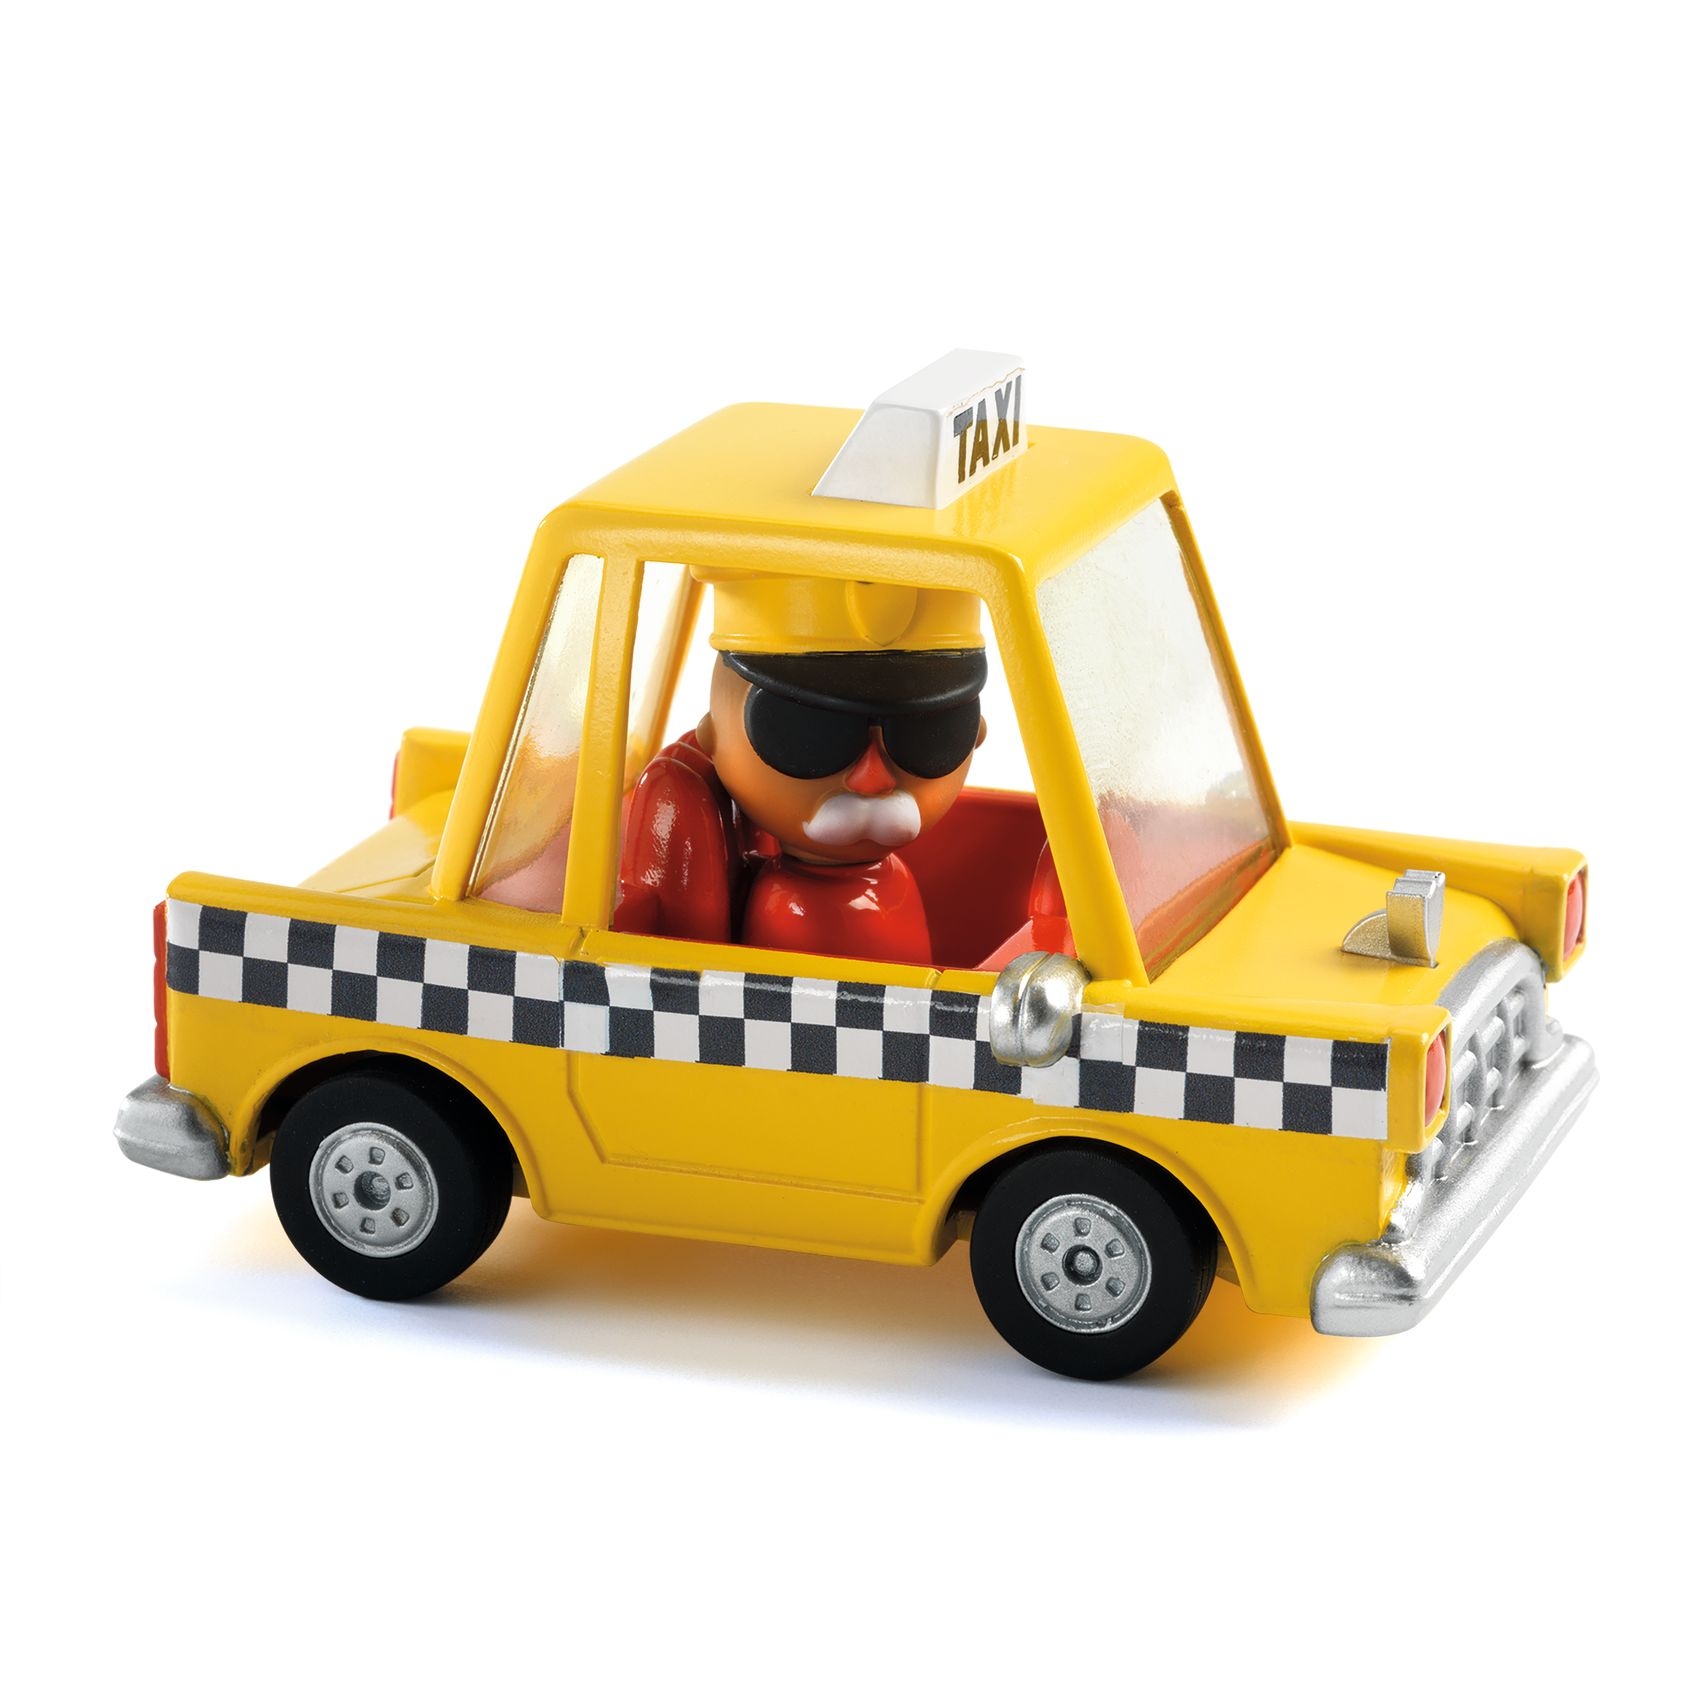 CRAZY MOTORS játékautó - Taxis Jani - Taxi Joe - 0